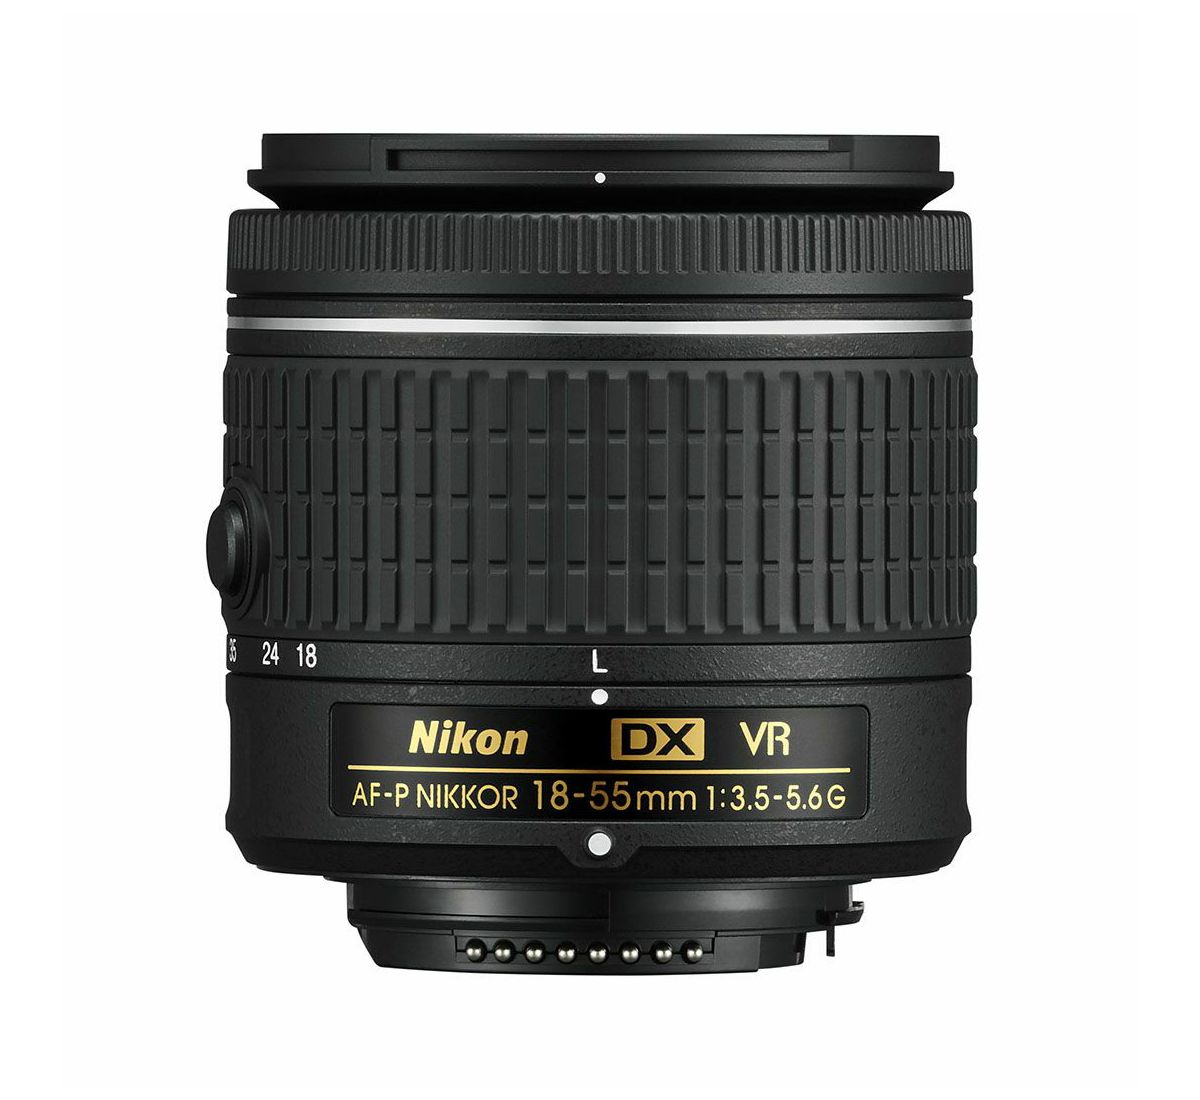 Nikon AF-P 18-55mm f/3.5-5.6G VR DX standardni objektiv auto focus Nikkor 18-55 f/3.5-5.6 F3.5-5.6 zoom lens (JAA826DA)